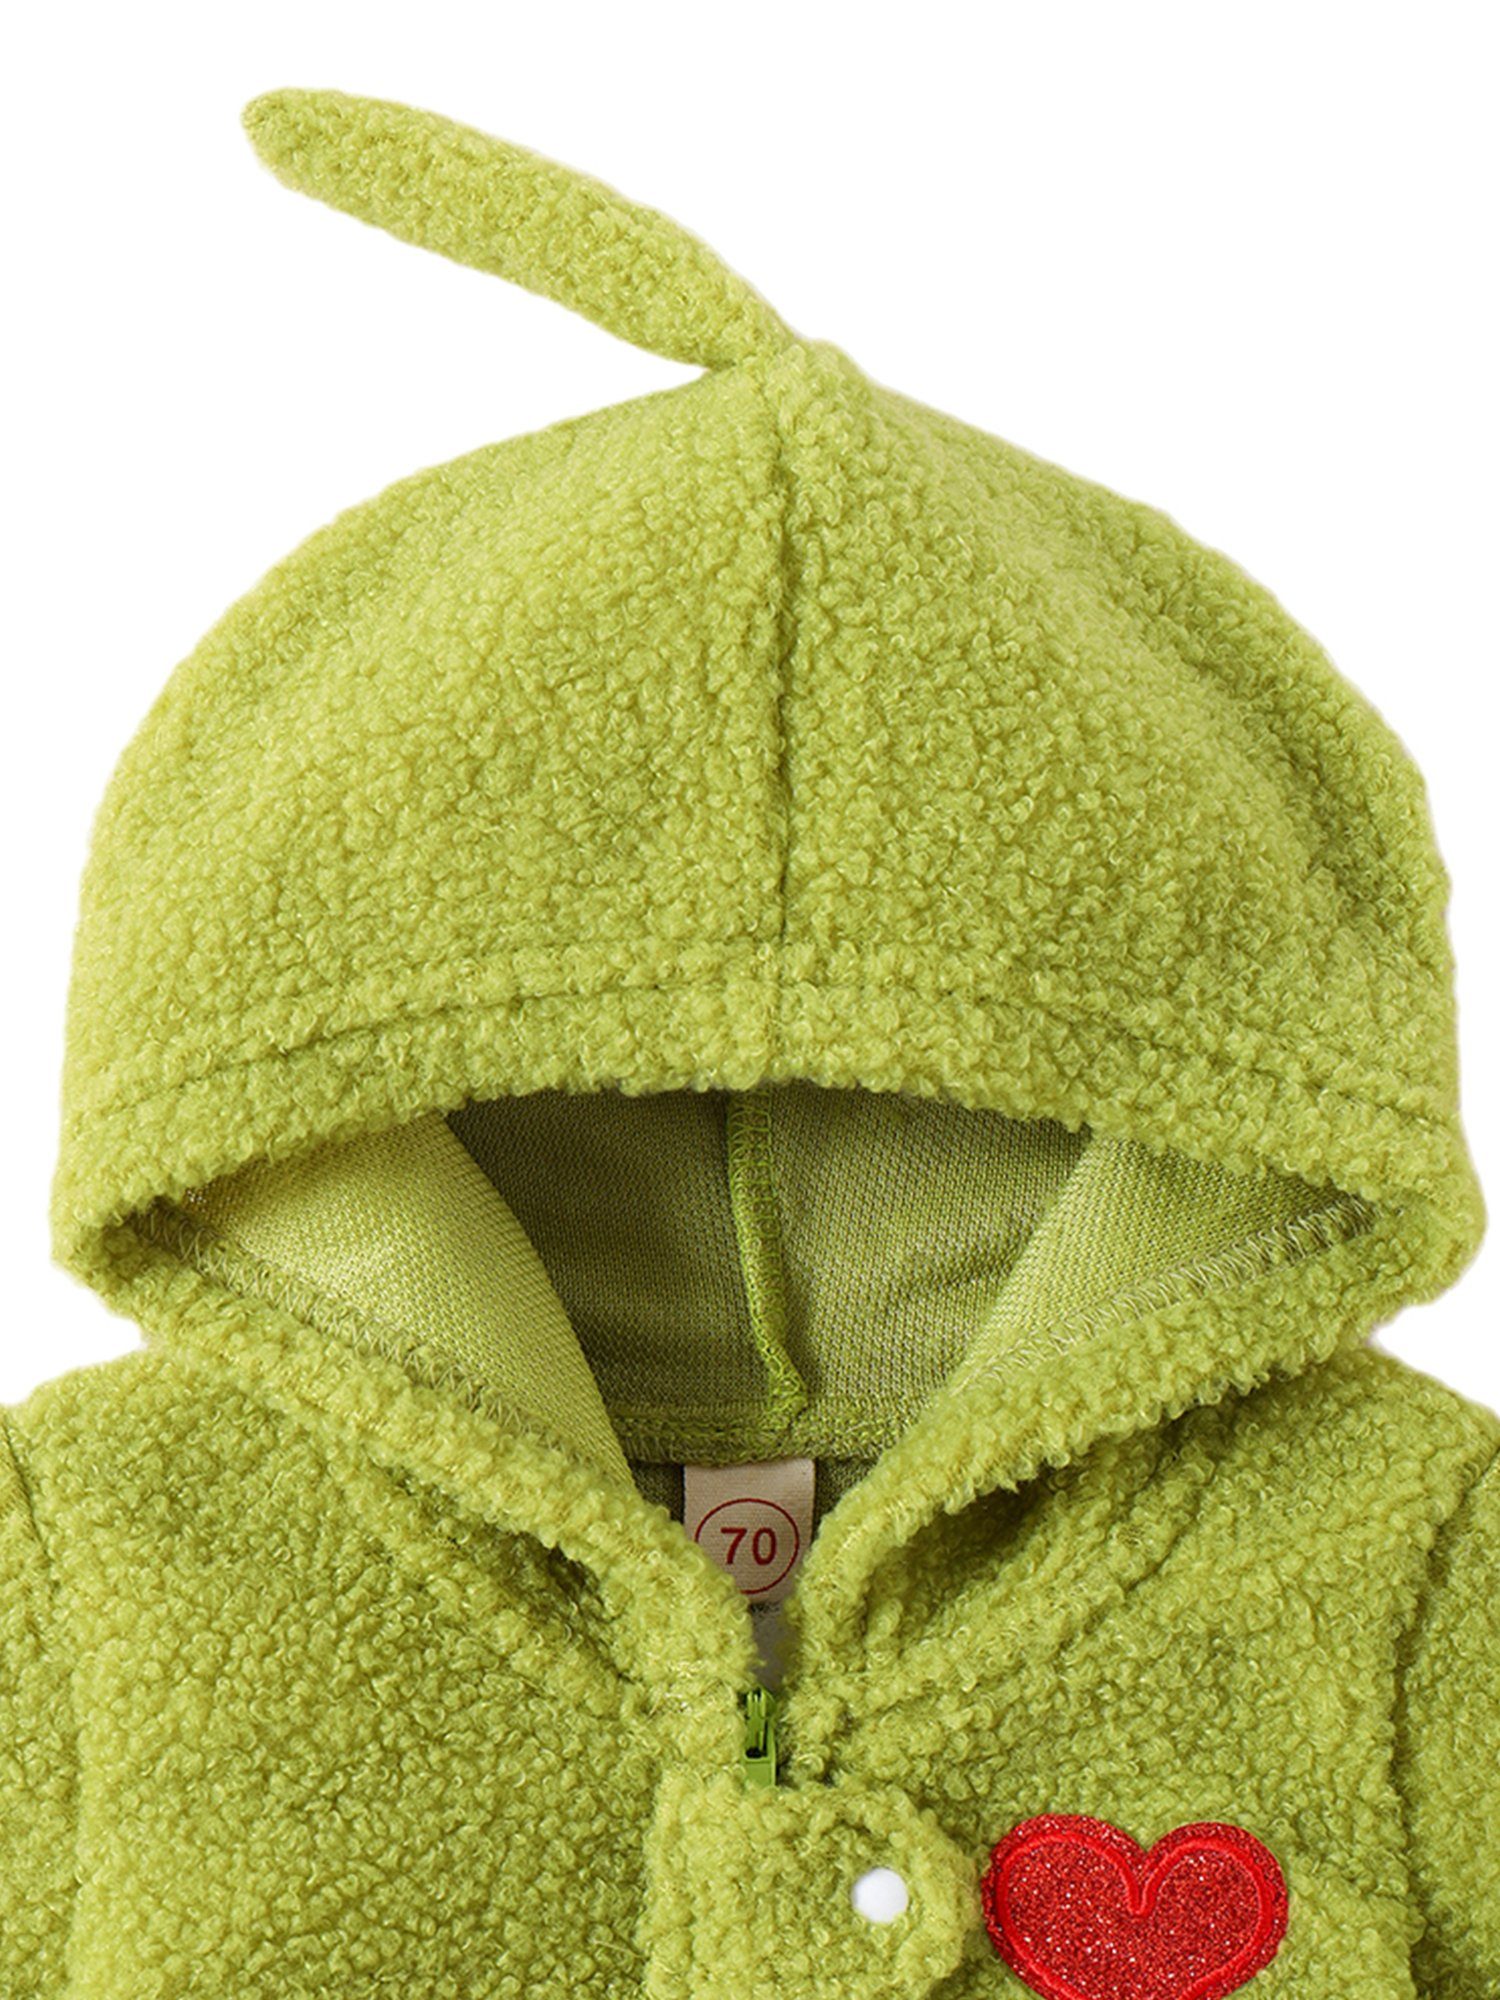 Liebesstickmuster Kapuze Grün Lapastyle Strampler Strampler Unisex Overall aus mit mit baby Süßes Plüsch